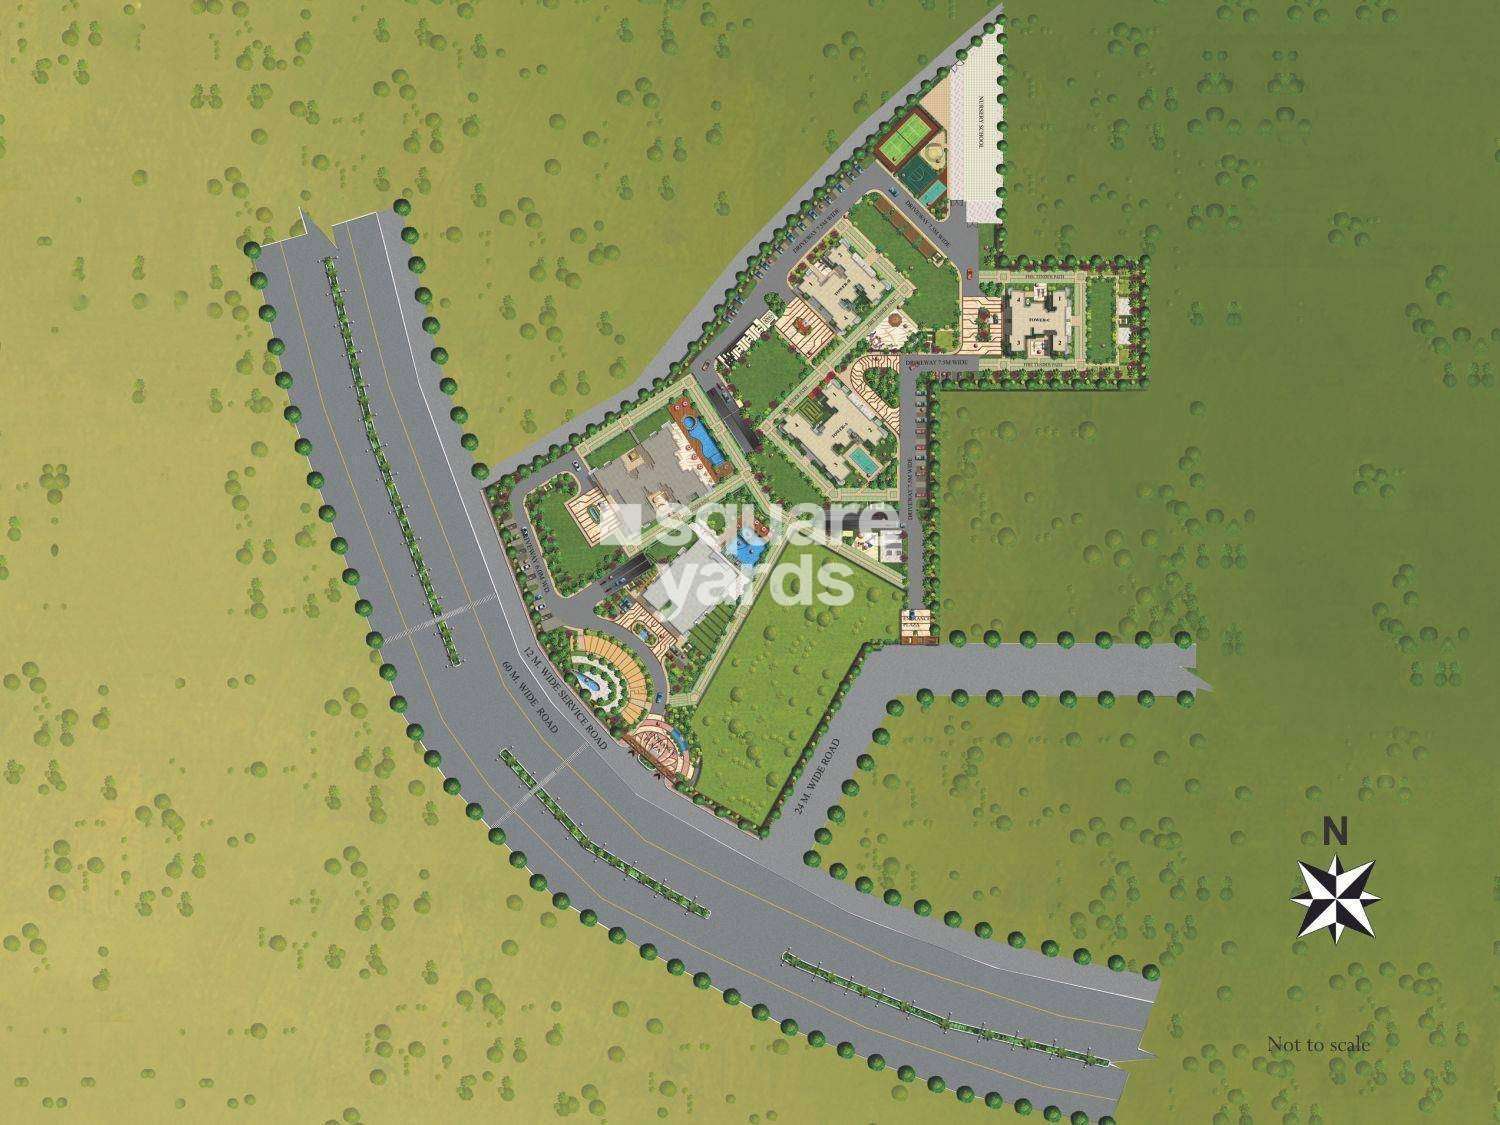 aipl zen residences master plan image1